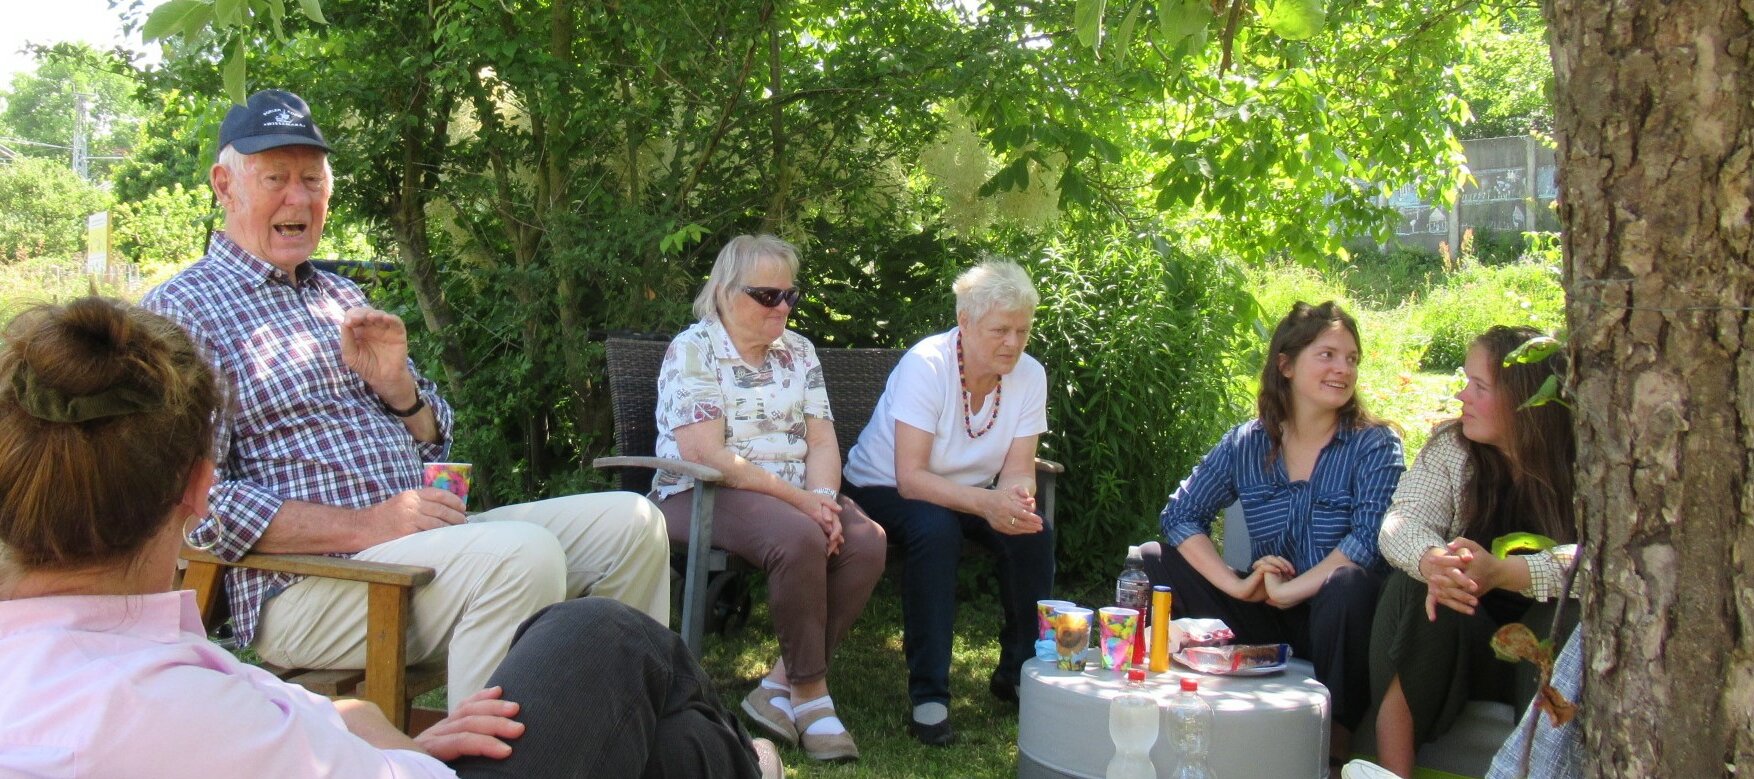 Sechs Gärtnerinnen und Gärtner sitzen in einem Halbkreis im Garten, unterhalten sich und genießen eine Trink- und Vesperpause.